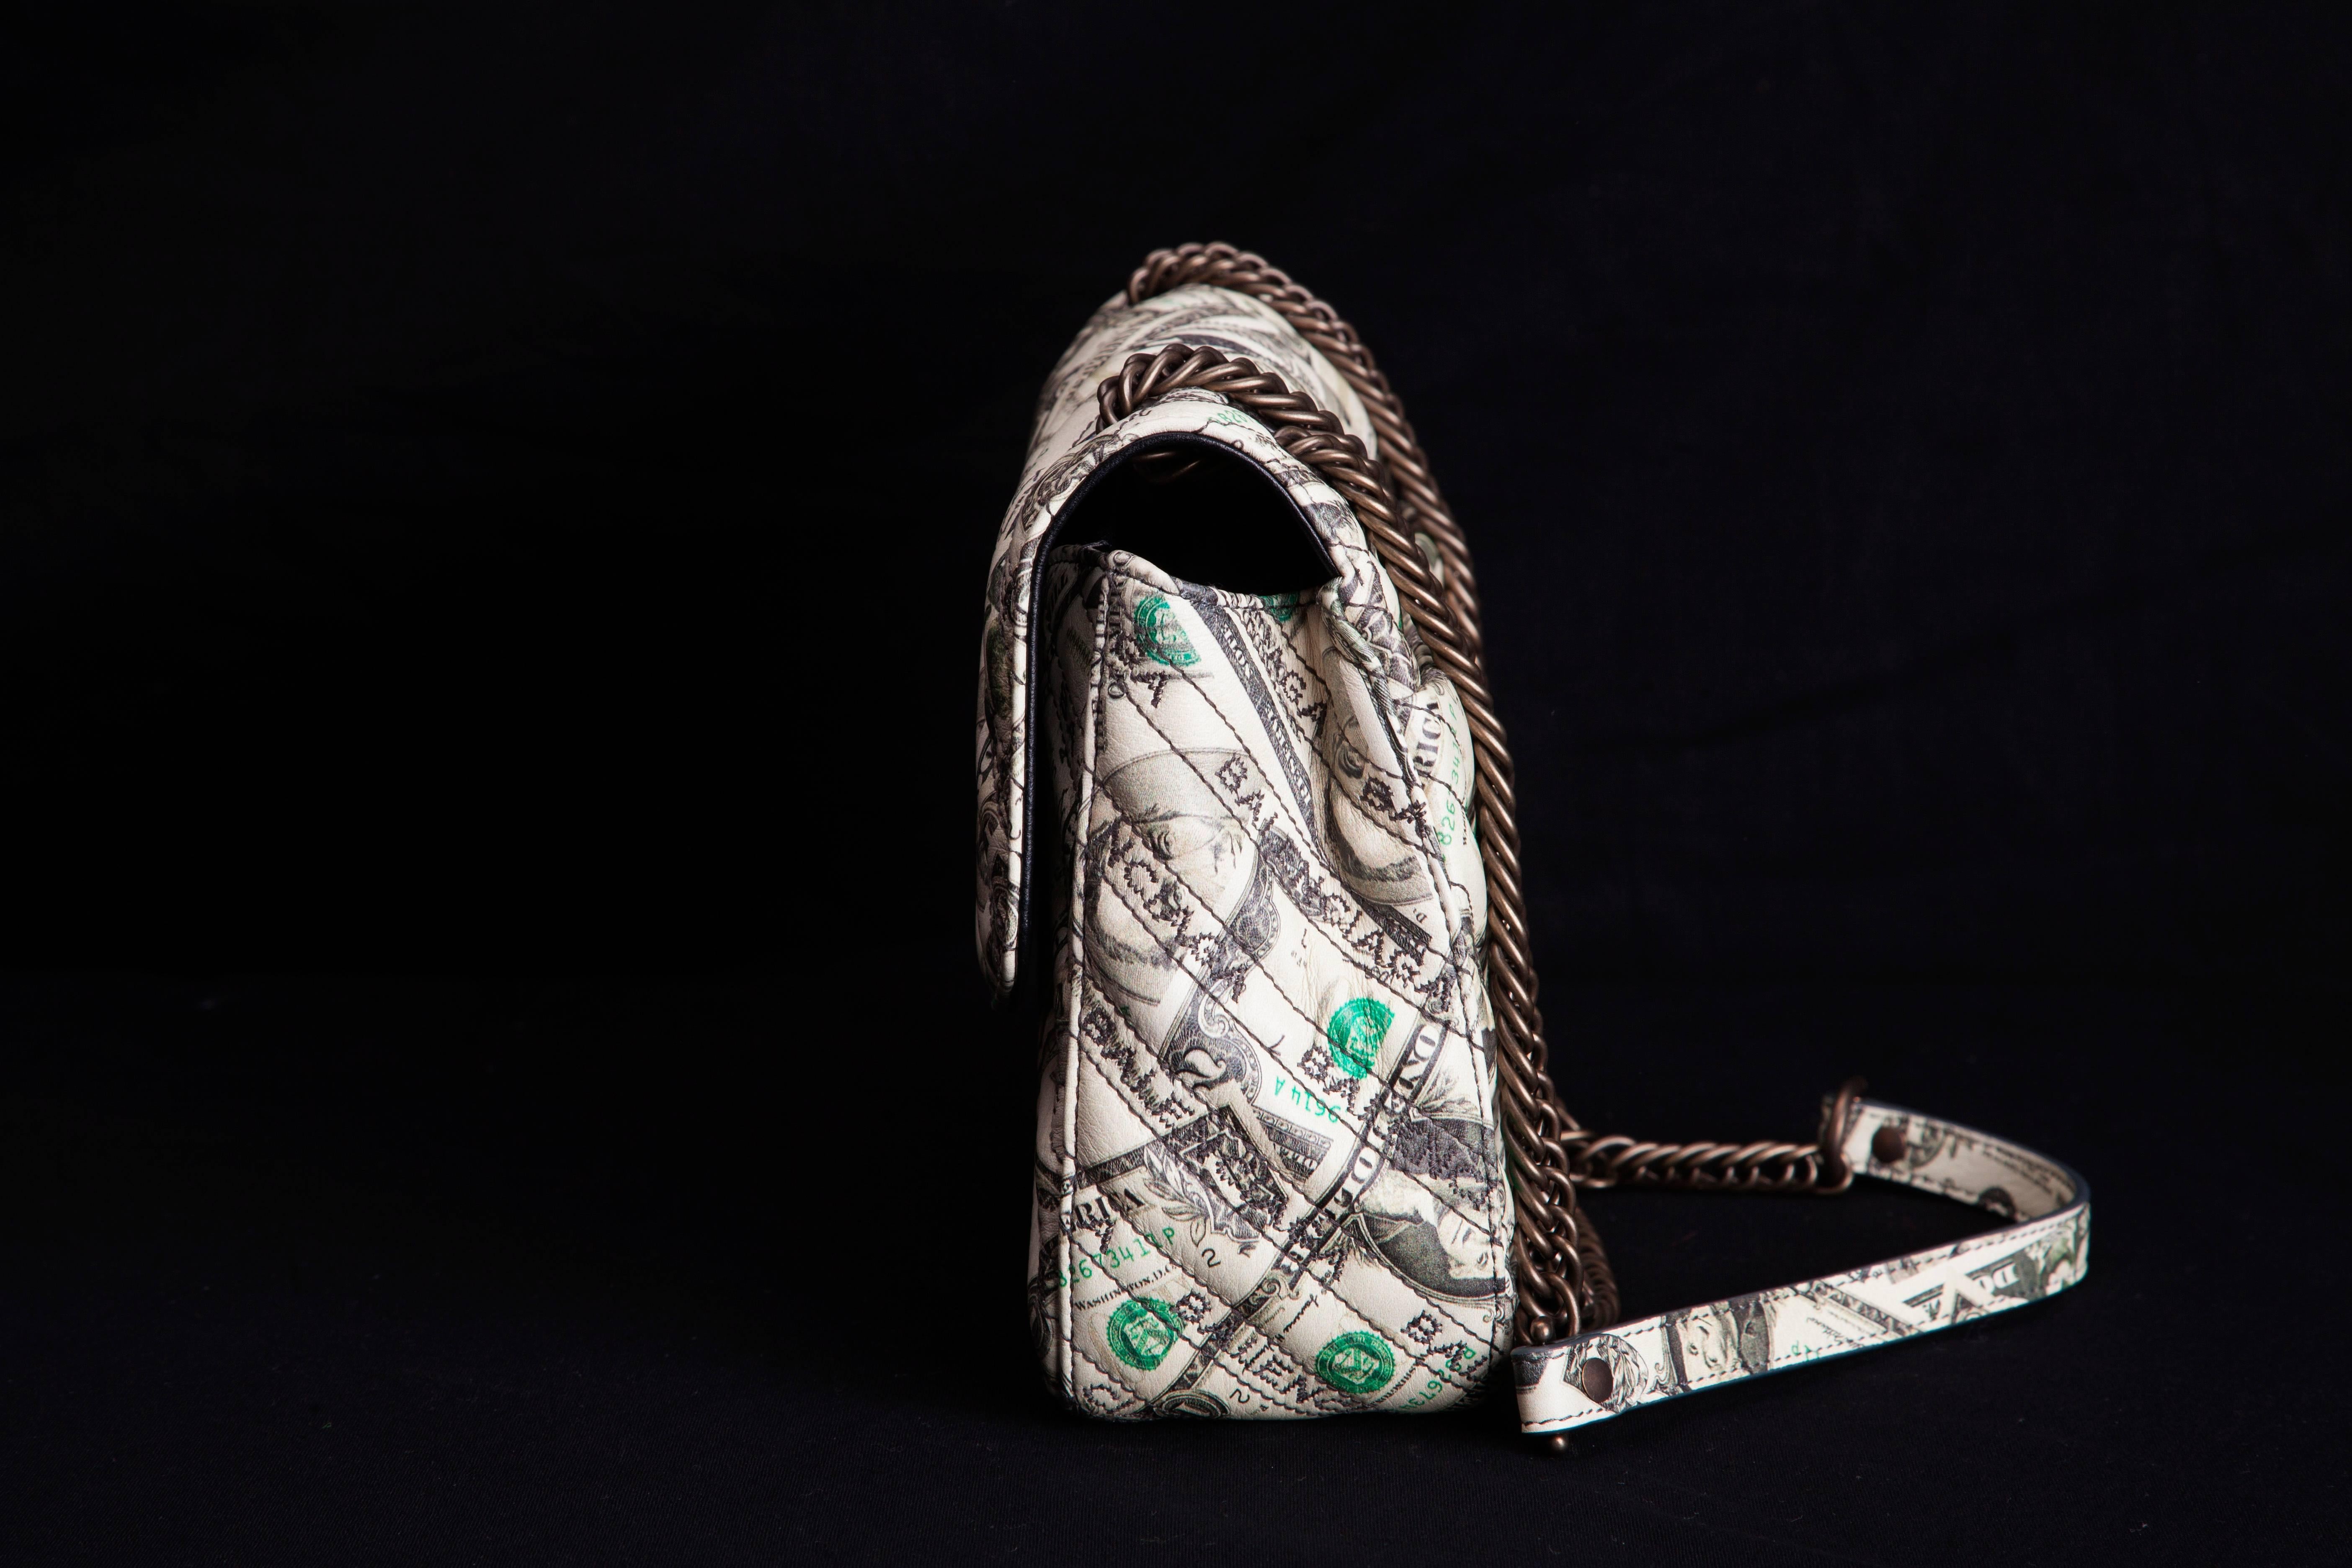 balenciaga money print bag